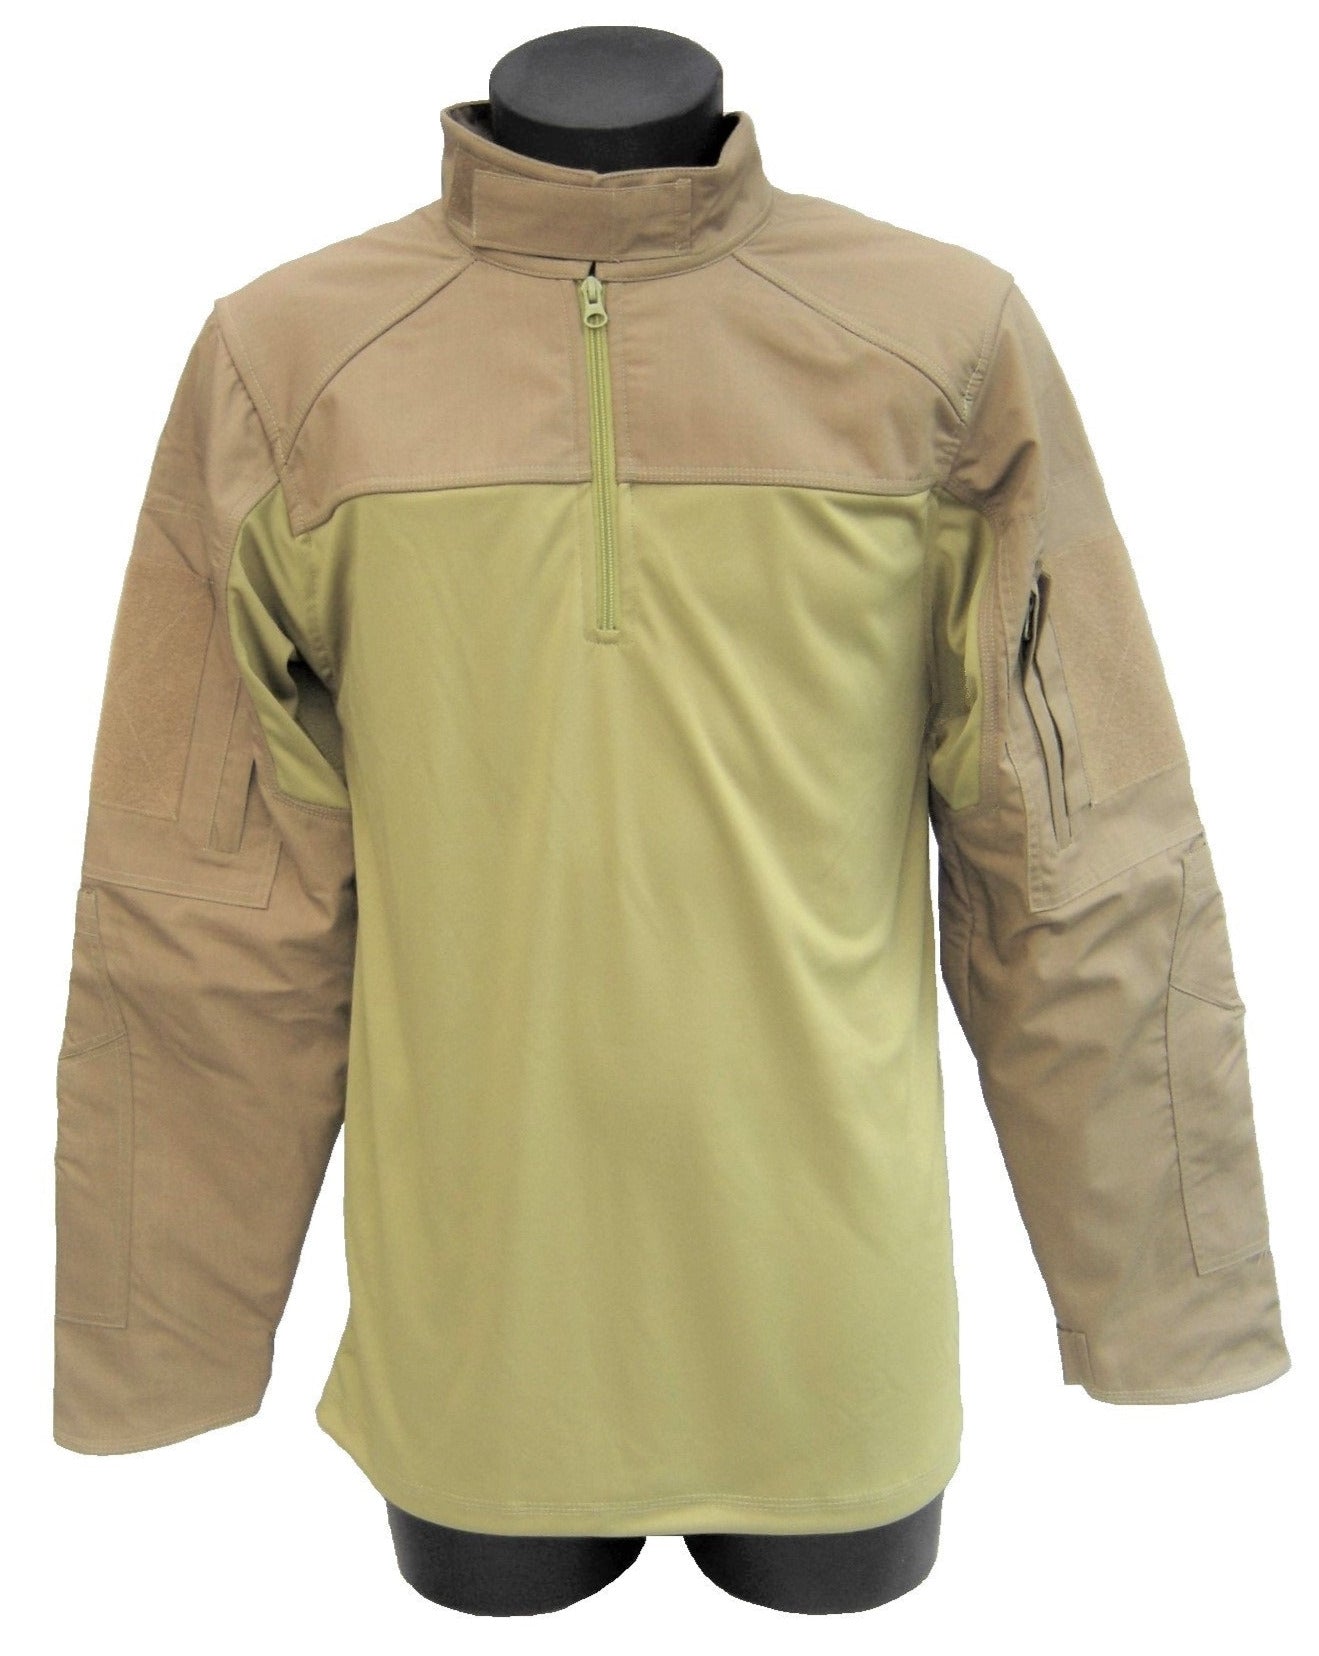 Combat shirt Coyote UBAC cut resistant defense clothing VBR-Belgium